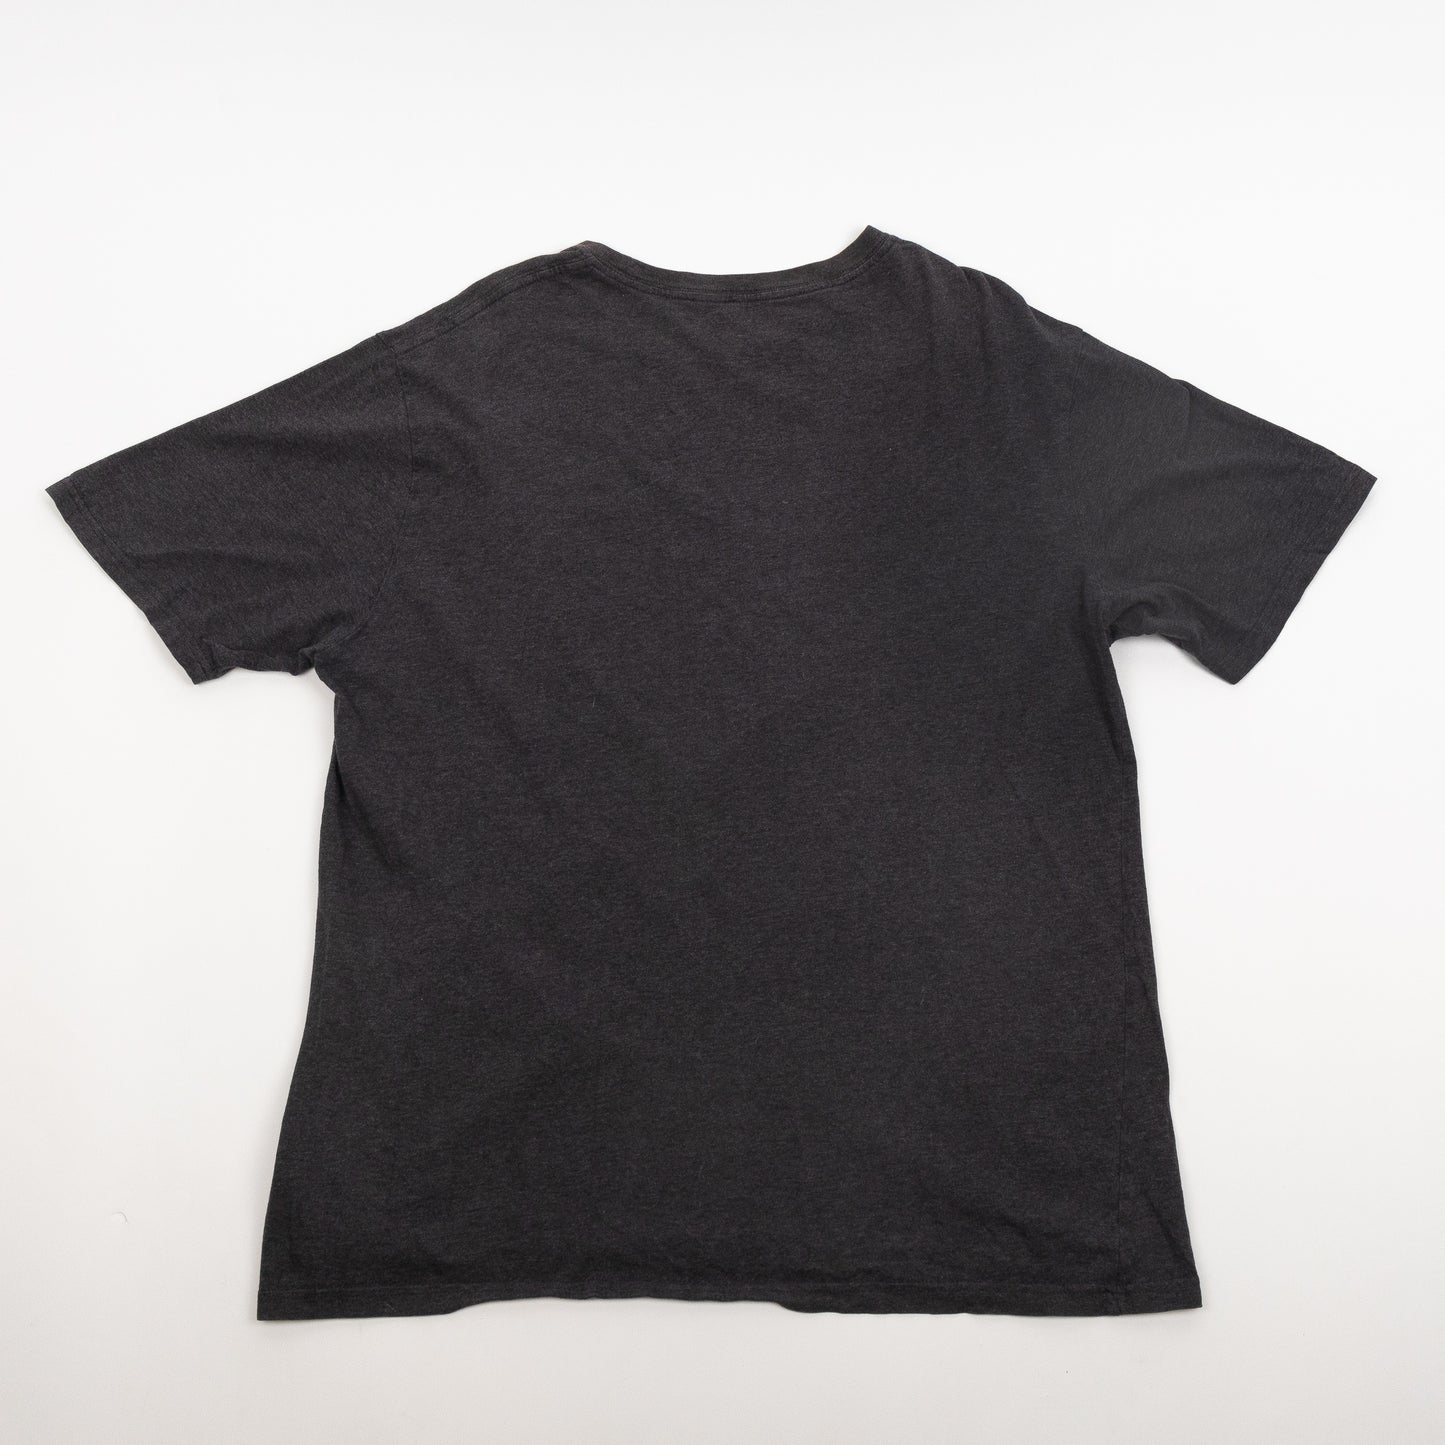 S/S Pocket T-Shirt Dark Grey Heather  536